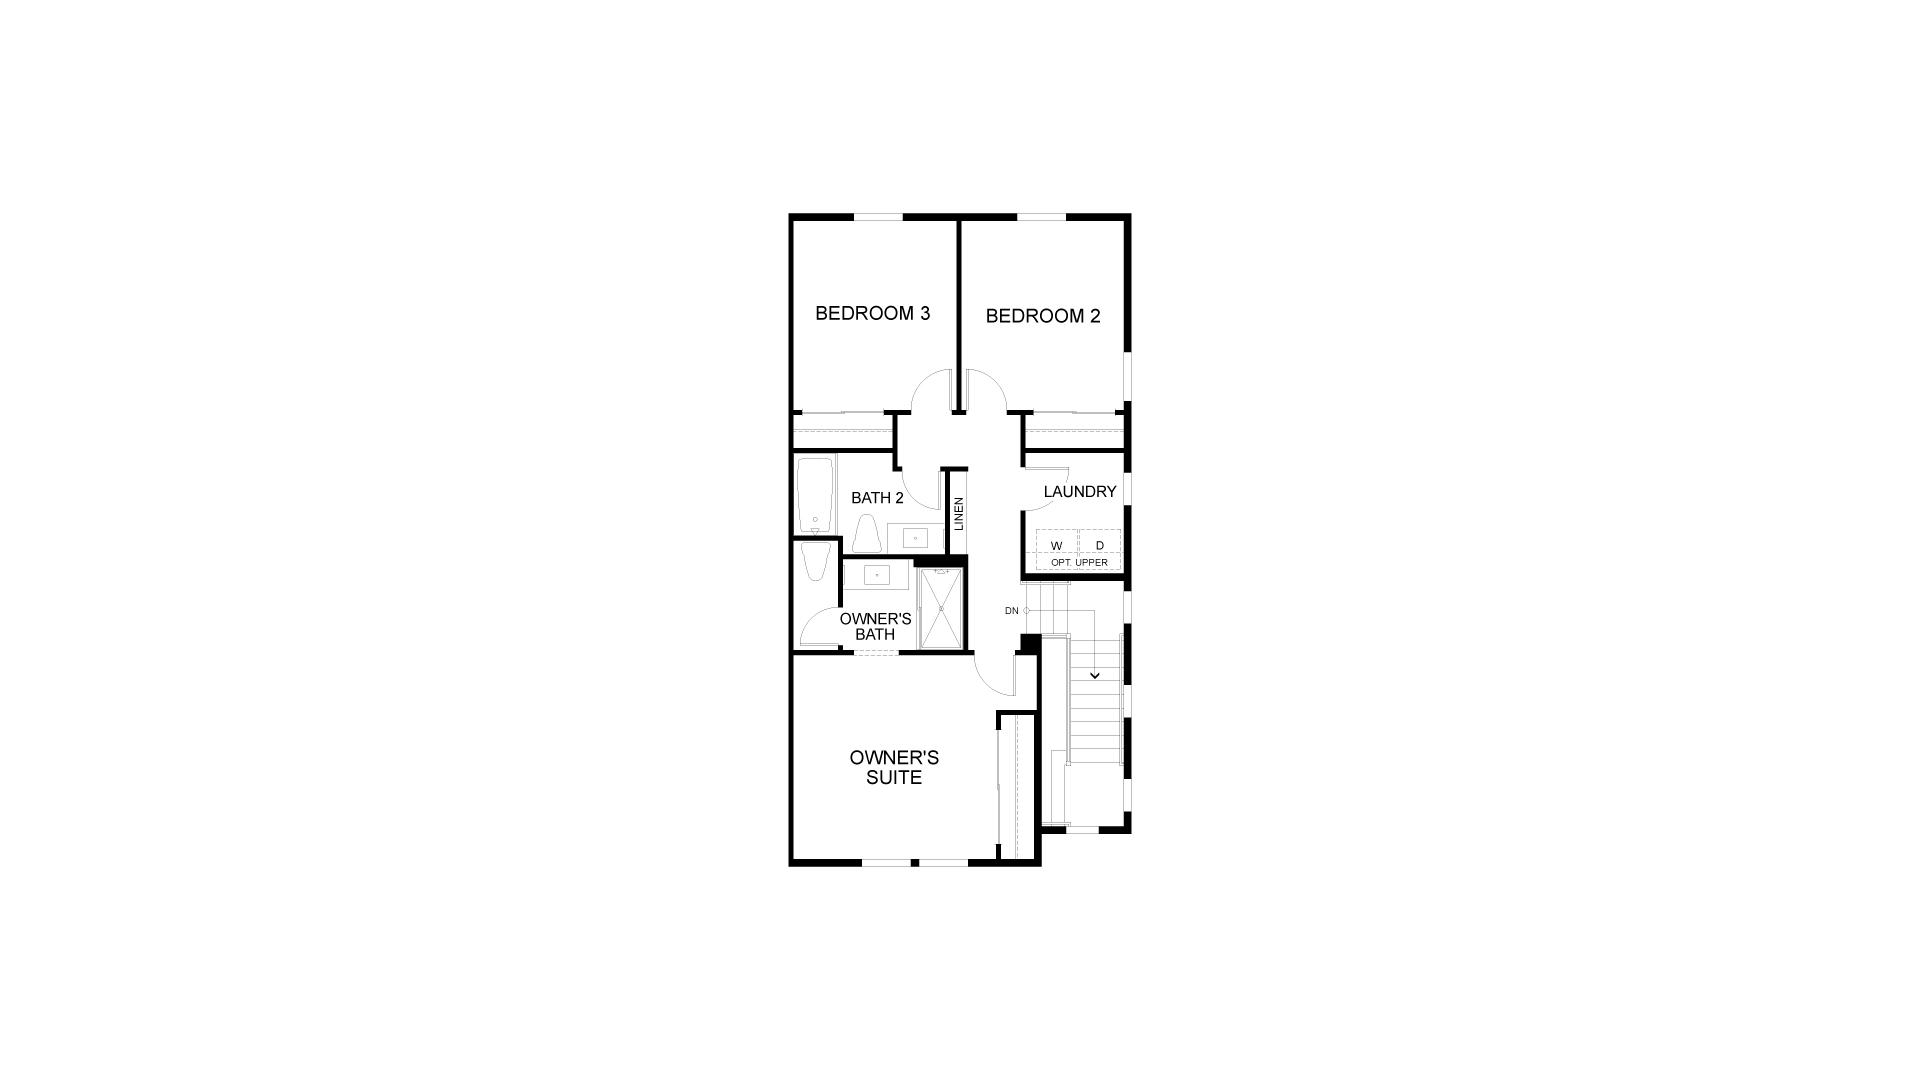 Residence 1 Second Floor. 1,395sf New Home in Petaluma, CA